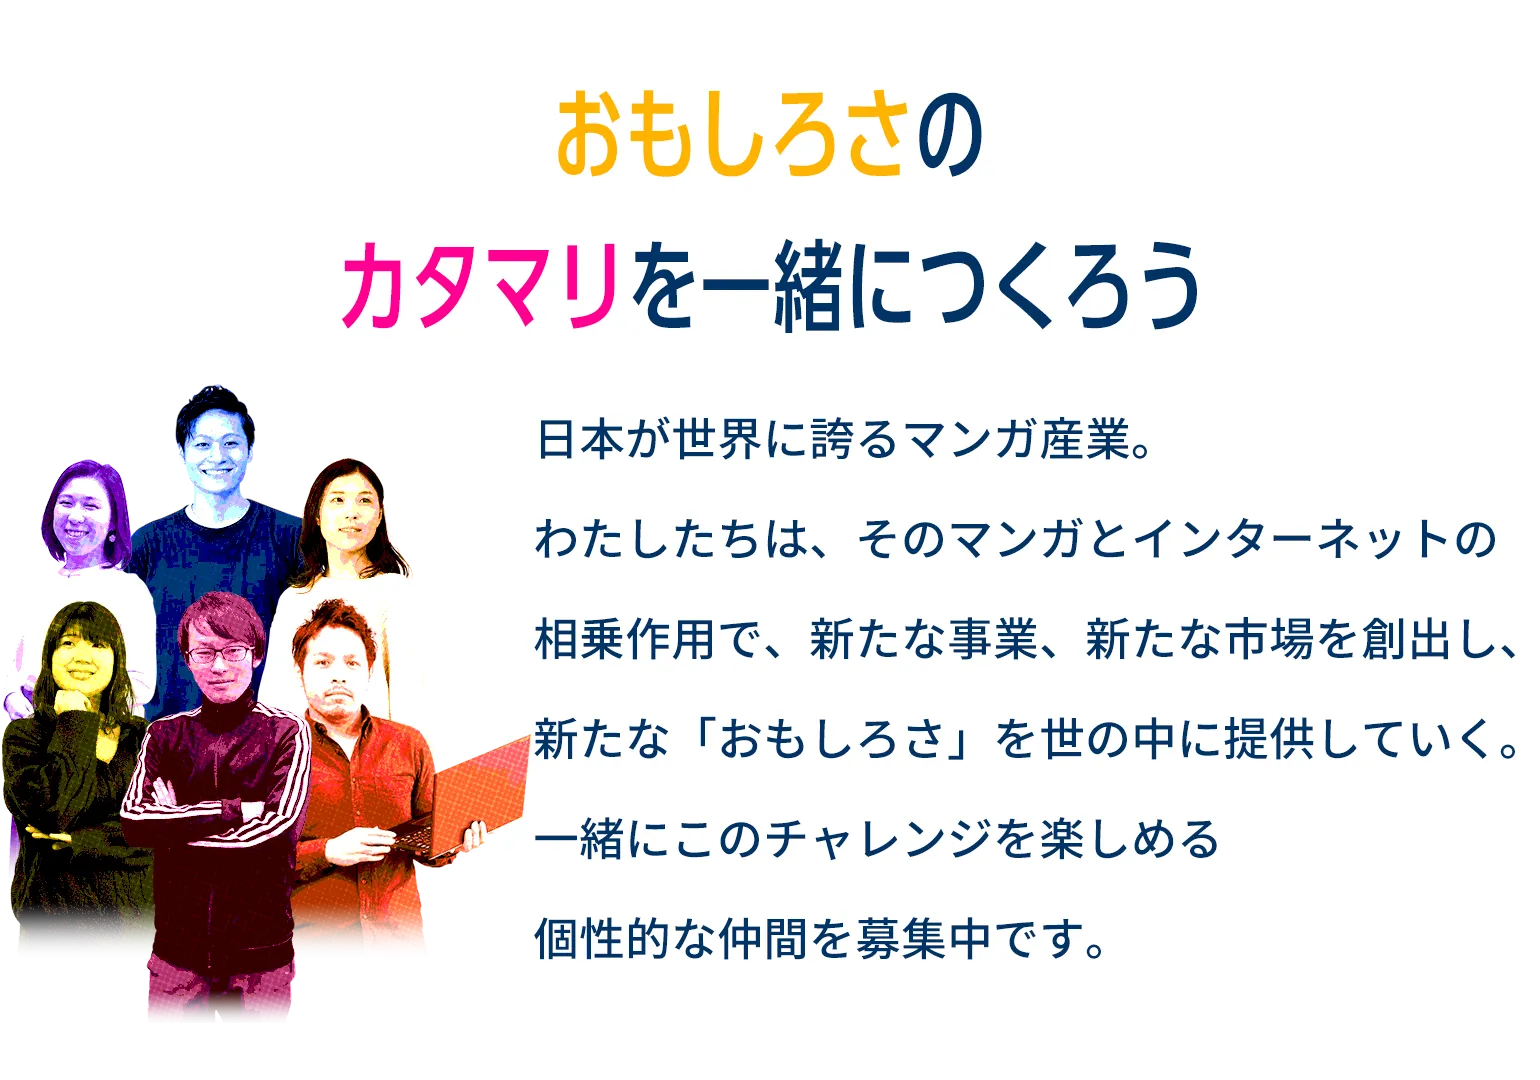 日本が世界に誇るマンガ産業。わたしたちは、そのマンガとインターネットの相乗作用で、新たな事業、新たな市場を創出し、新たな「おもしろさ」を世の中に提供していく。一緒にこのチャレンジを楽しめる個性的な仲間を募集中です。